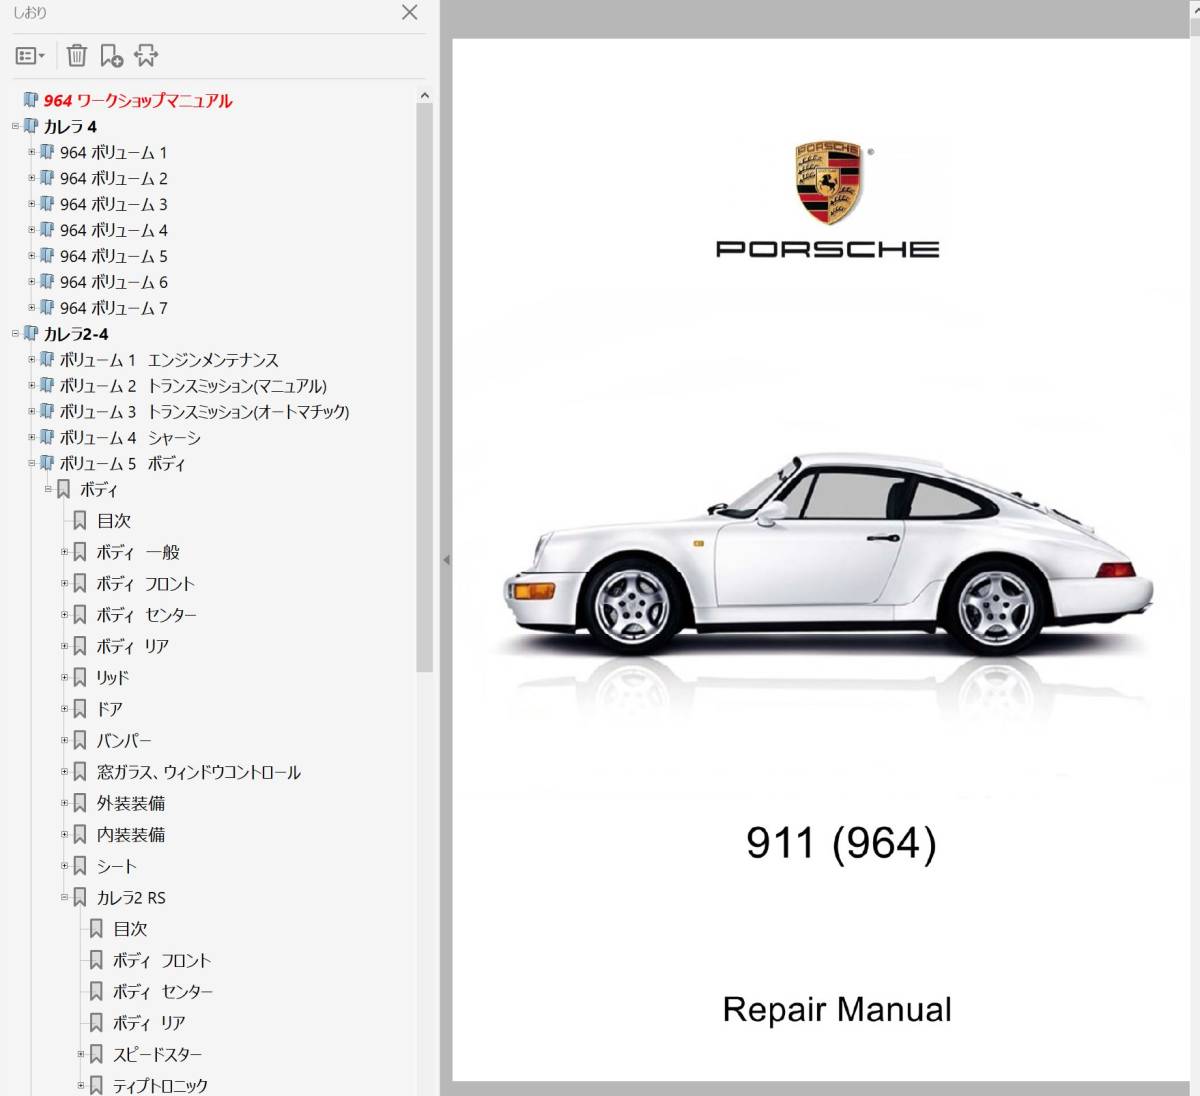 ポルシェ 911 964 カレラ2-4 総合ワークショップマニュアル Ver2 整備書 配線図 パーツリスト付き 修理書 マニュアルの画像1